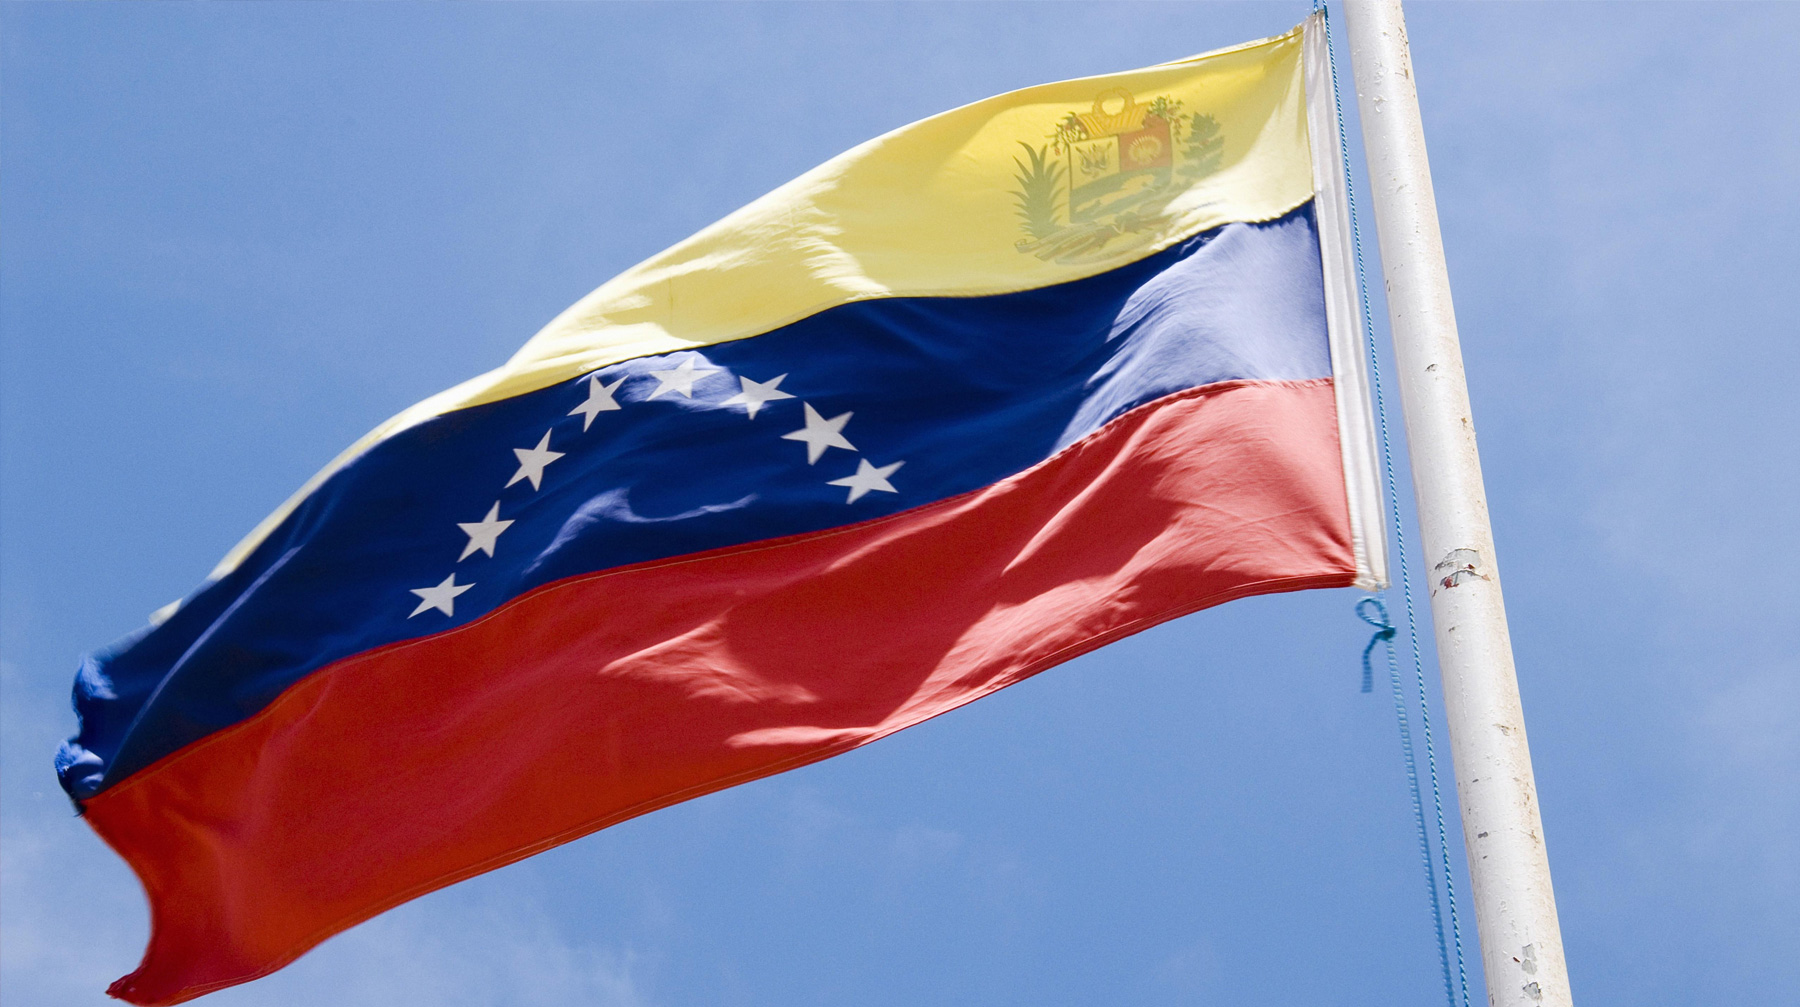 Вашингтон не признает право венесуэльского президента разрывать дипломатические отношения и отказался выводить своих дипломатов Фото: © GLOBAL LOOK Press / Uwe Kraft / imageBROKER.com